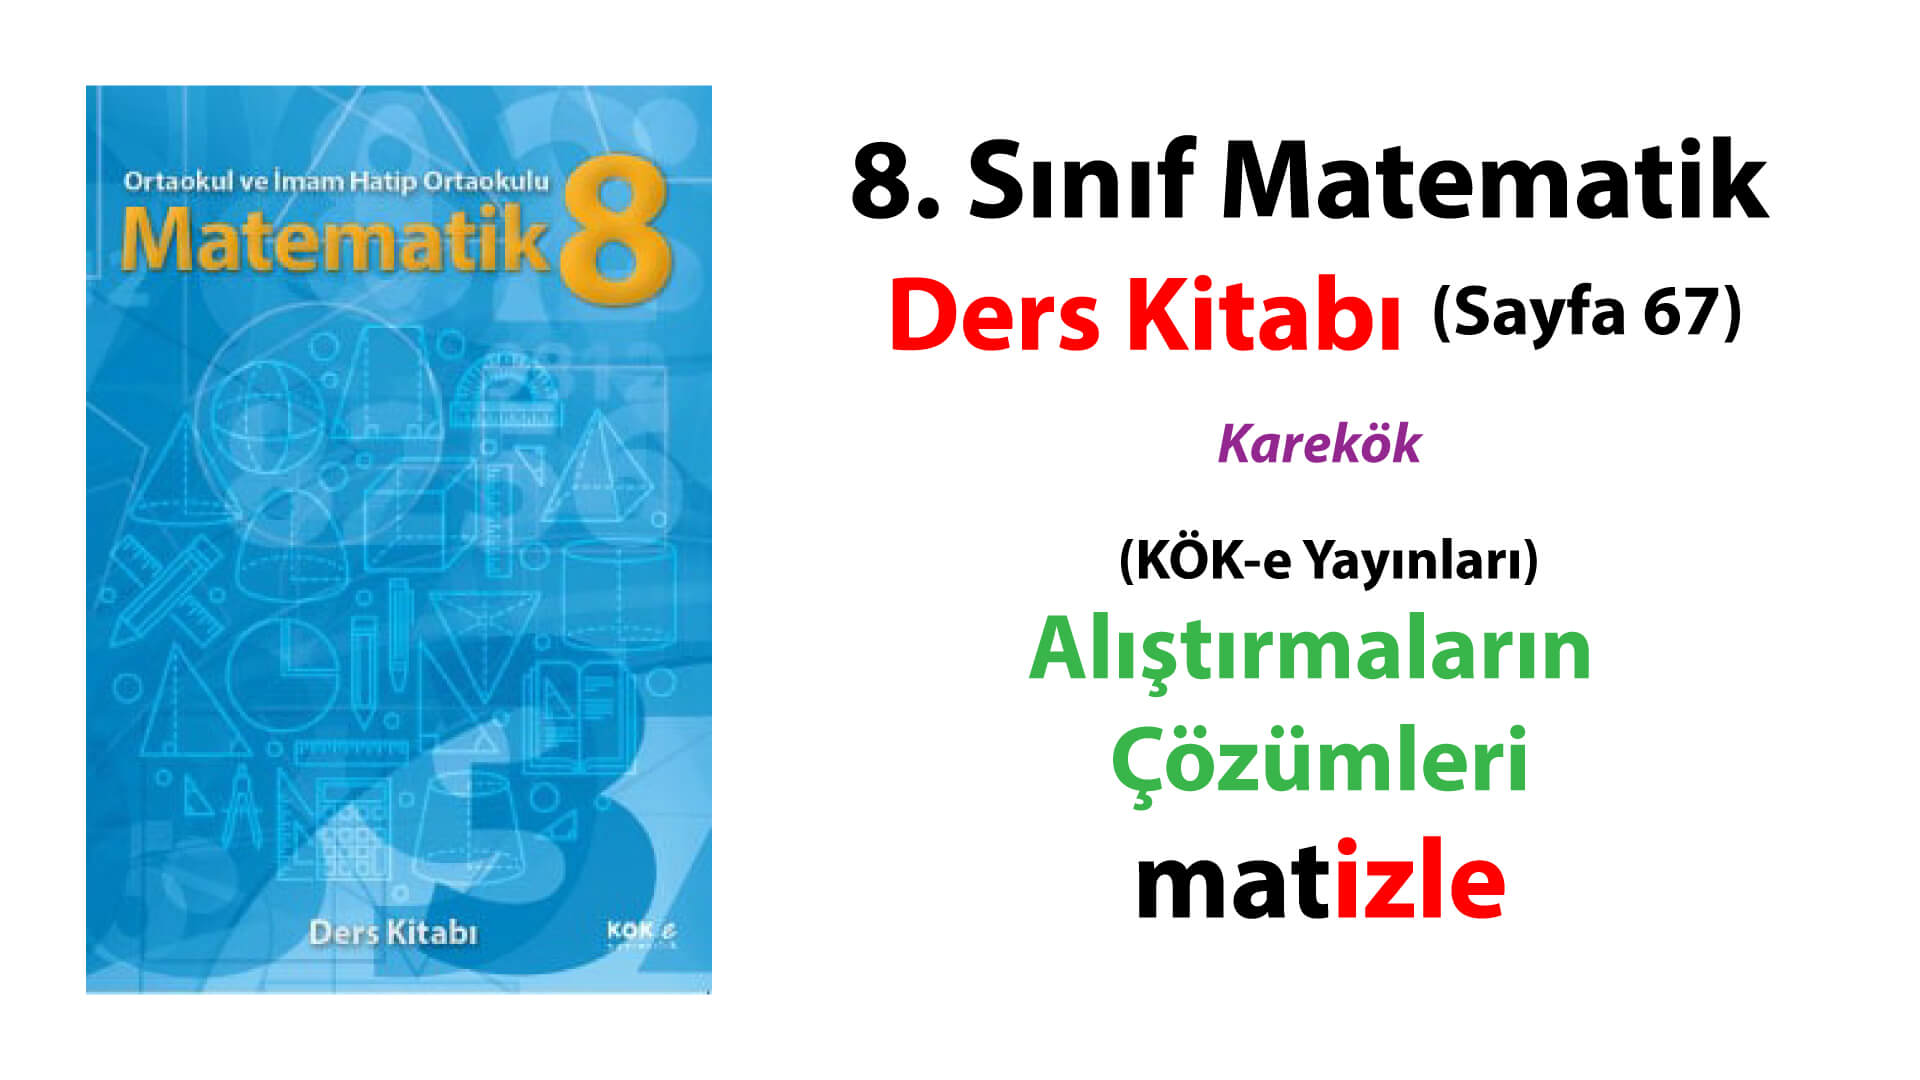 8. Sınıf Matematik ders kitabı (kök e yayınları) 67. sayfa alıştırmaların (öğrendiklerimizi uygulayalım) çözümleri